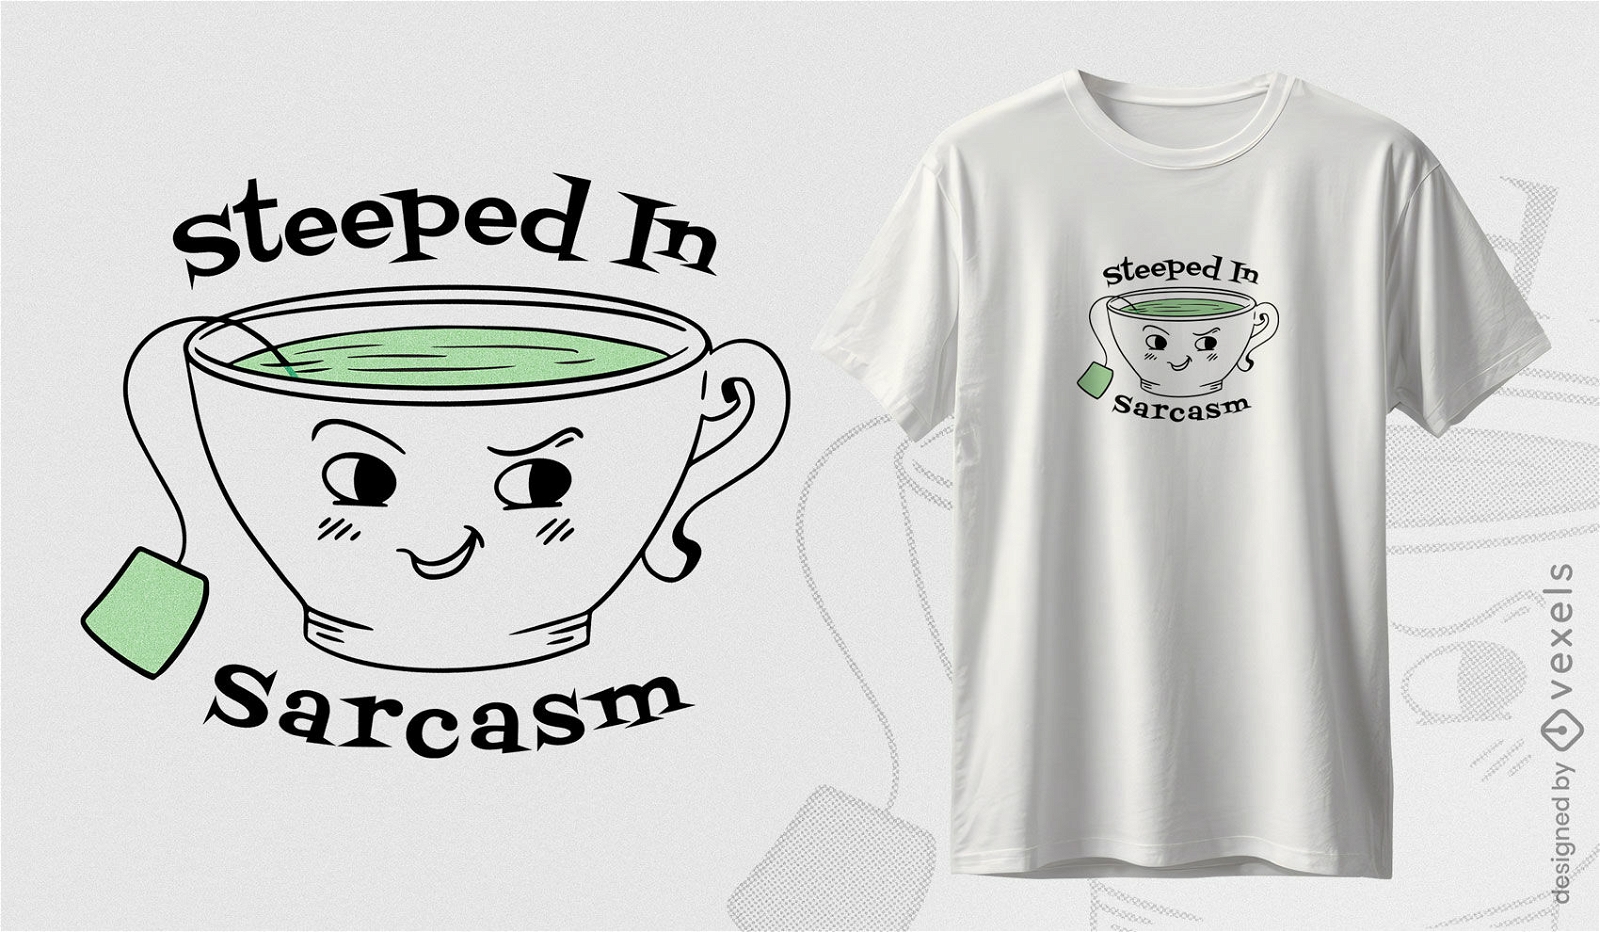 Tea sarcasm t-shirt design